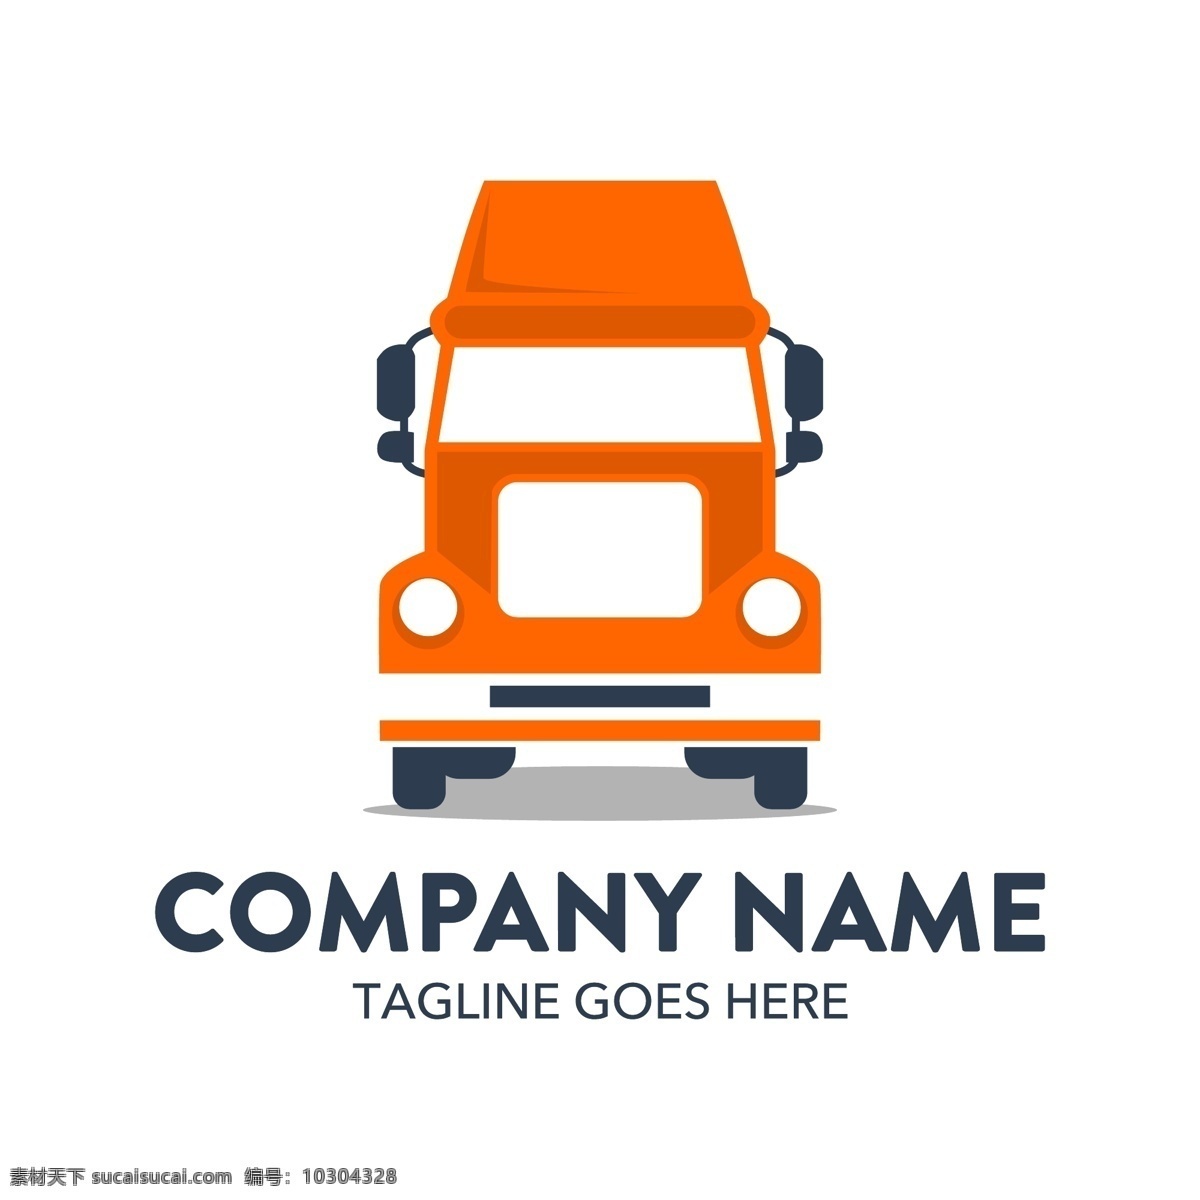 创意 汽车 logo 矢量 广告 标志 矢量素材 消防车 橙色 宣传 设计素材